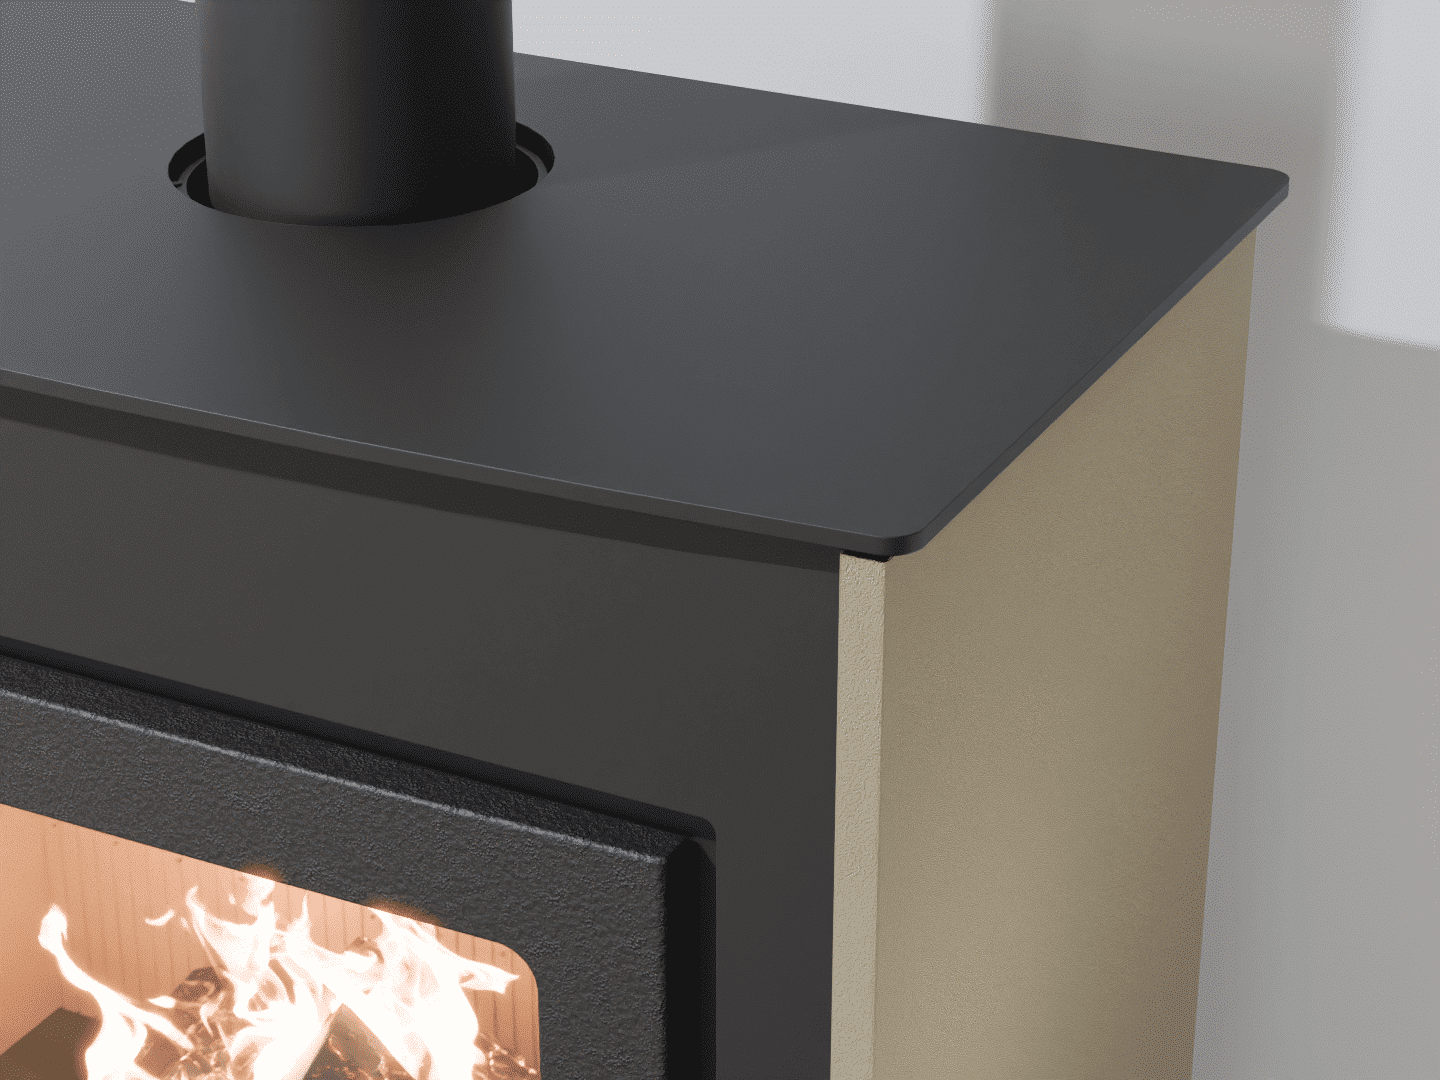 2103_Fireplace stove with heat exchanger_Grey Beige_KamnaSchejbal_Kamna Schejbal_Kamnazvyroby_detail pravý bok